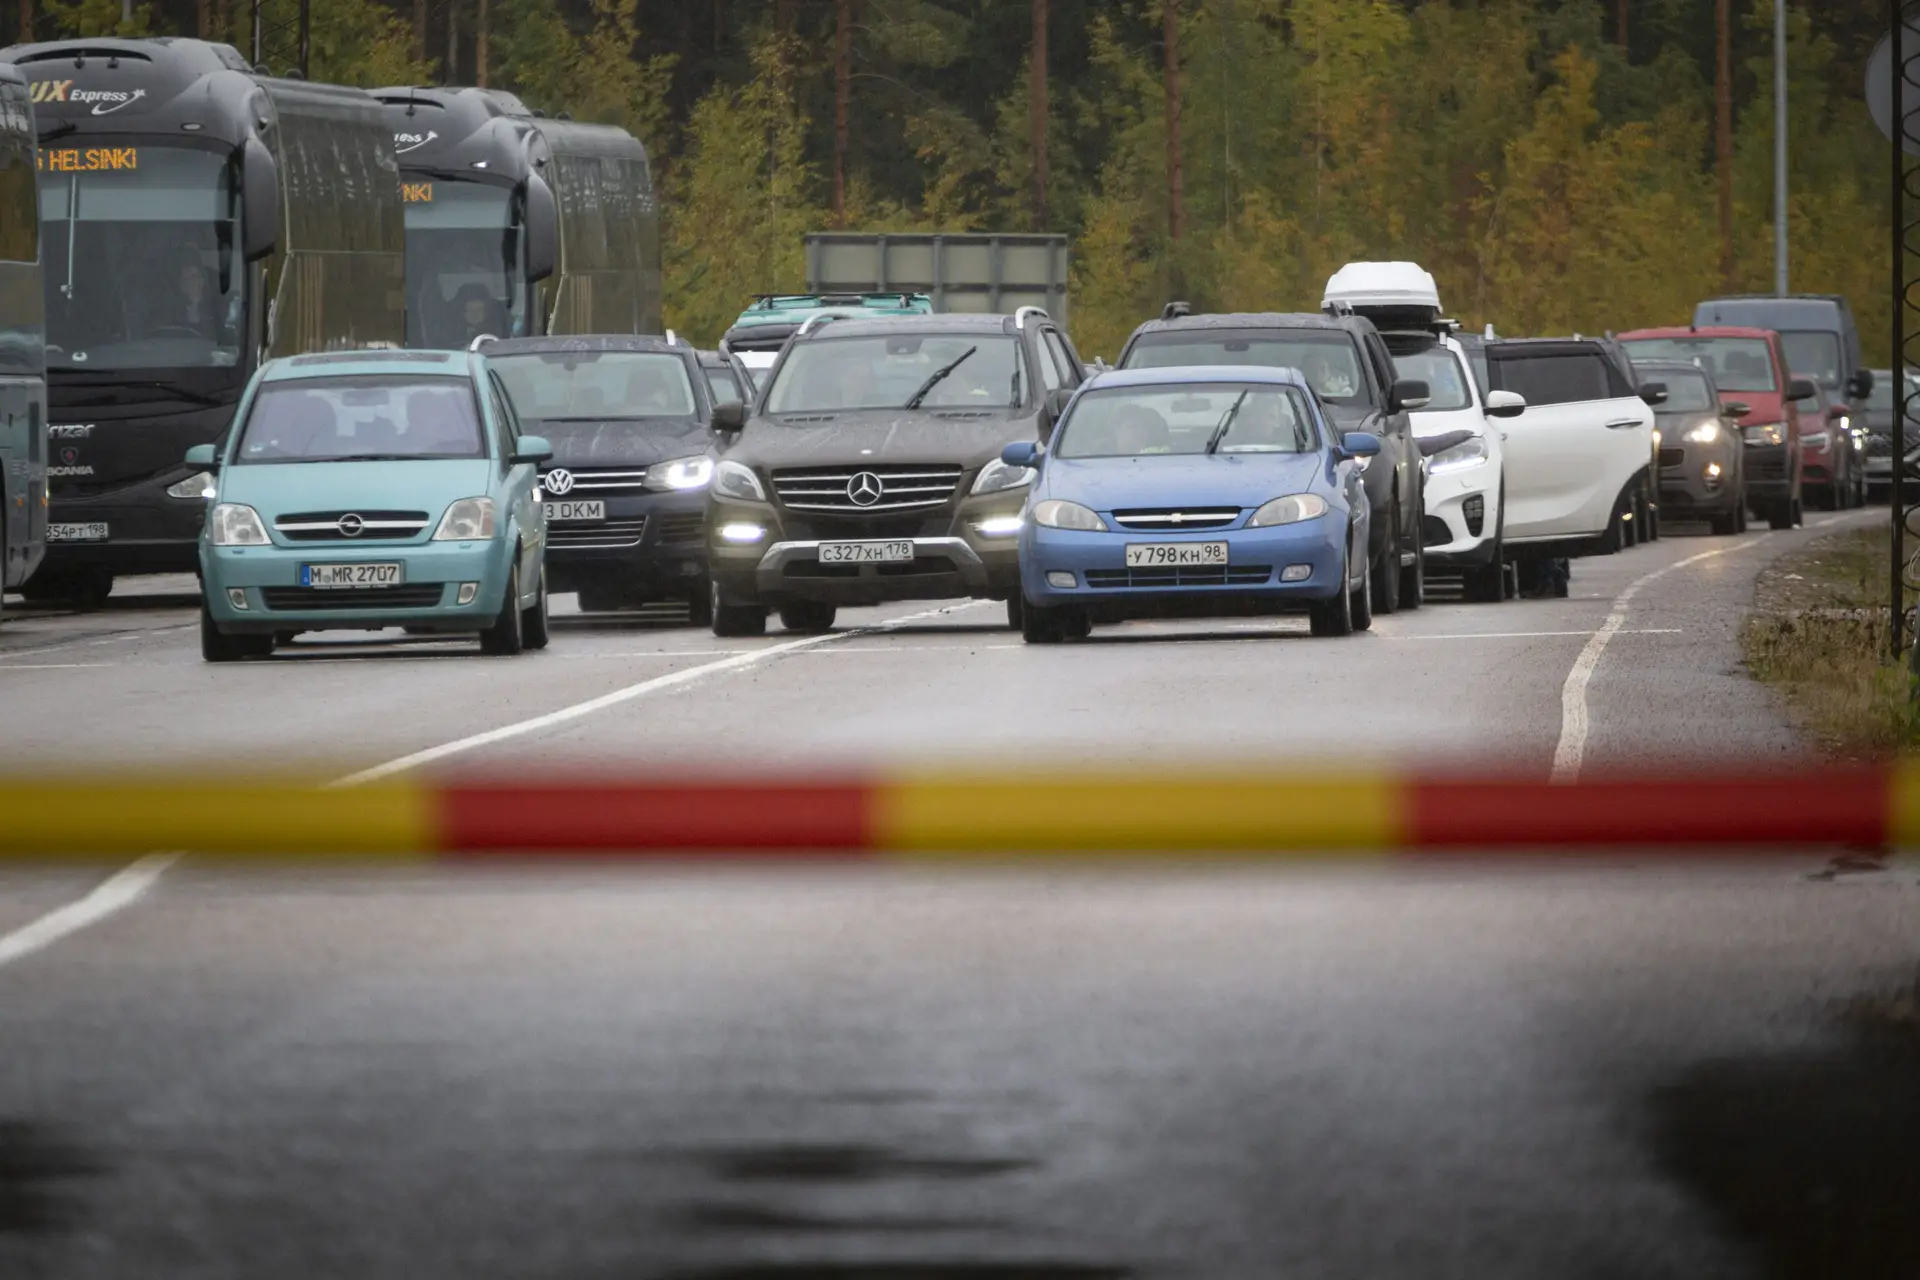 Carros e autocarros russos tentam passar a fronteira para entrar em Virolahti, na Finlândia.